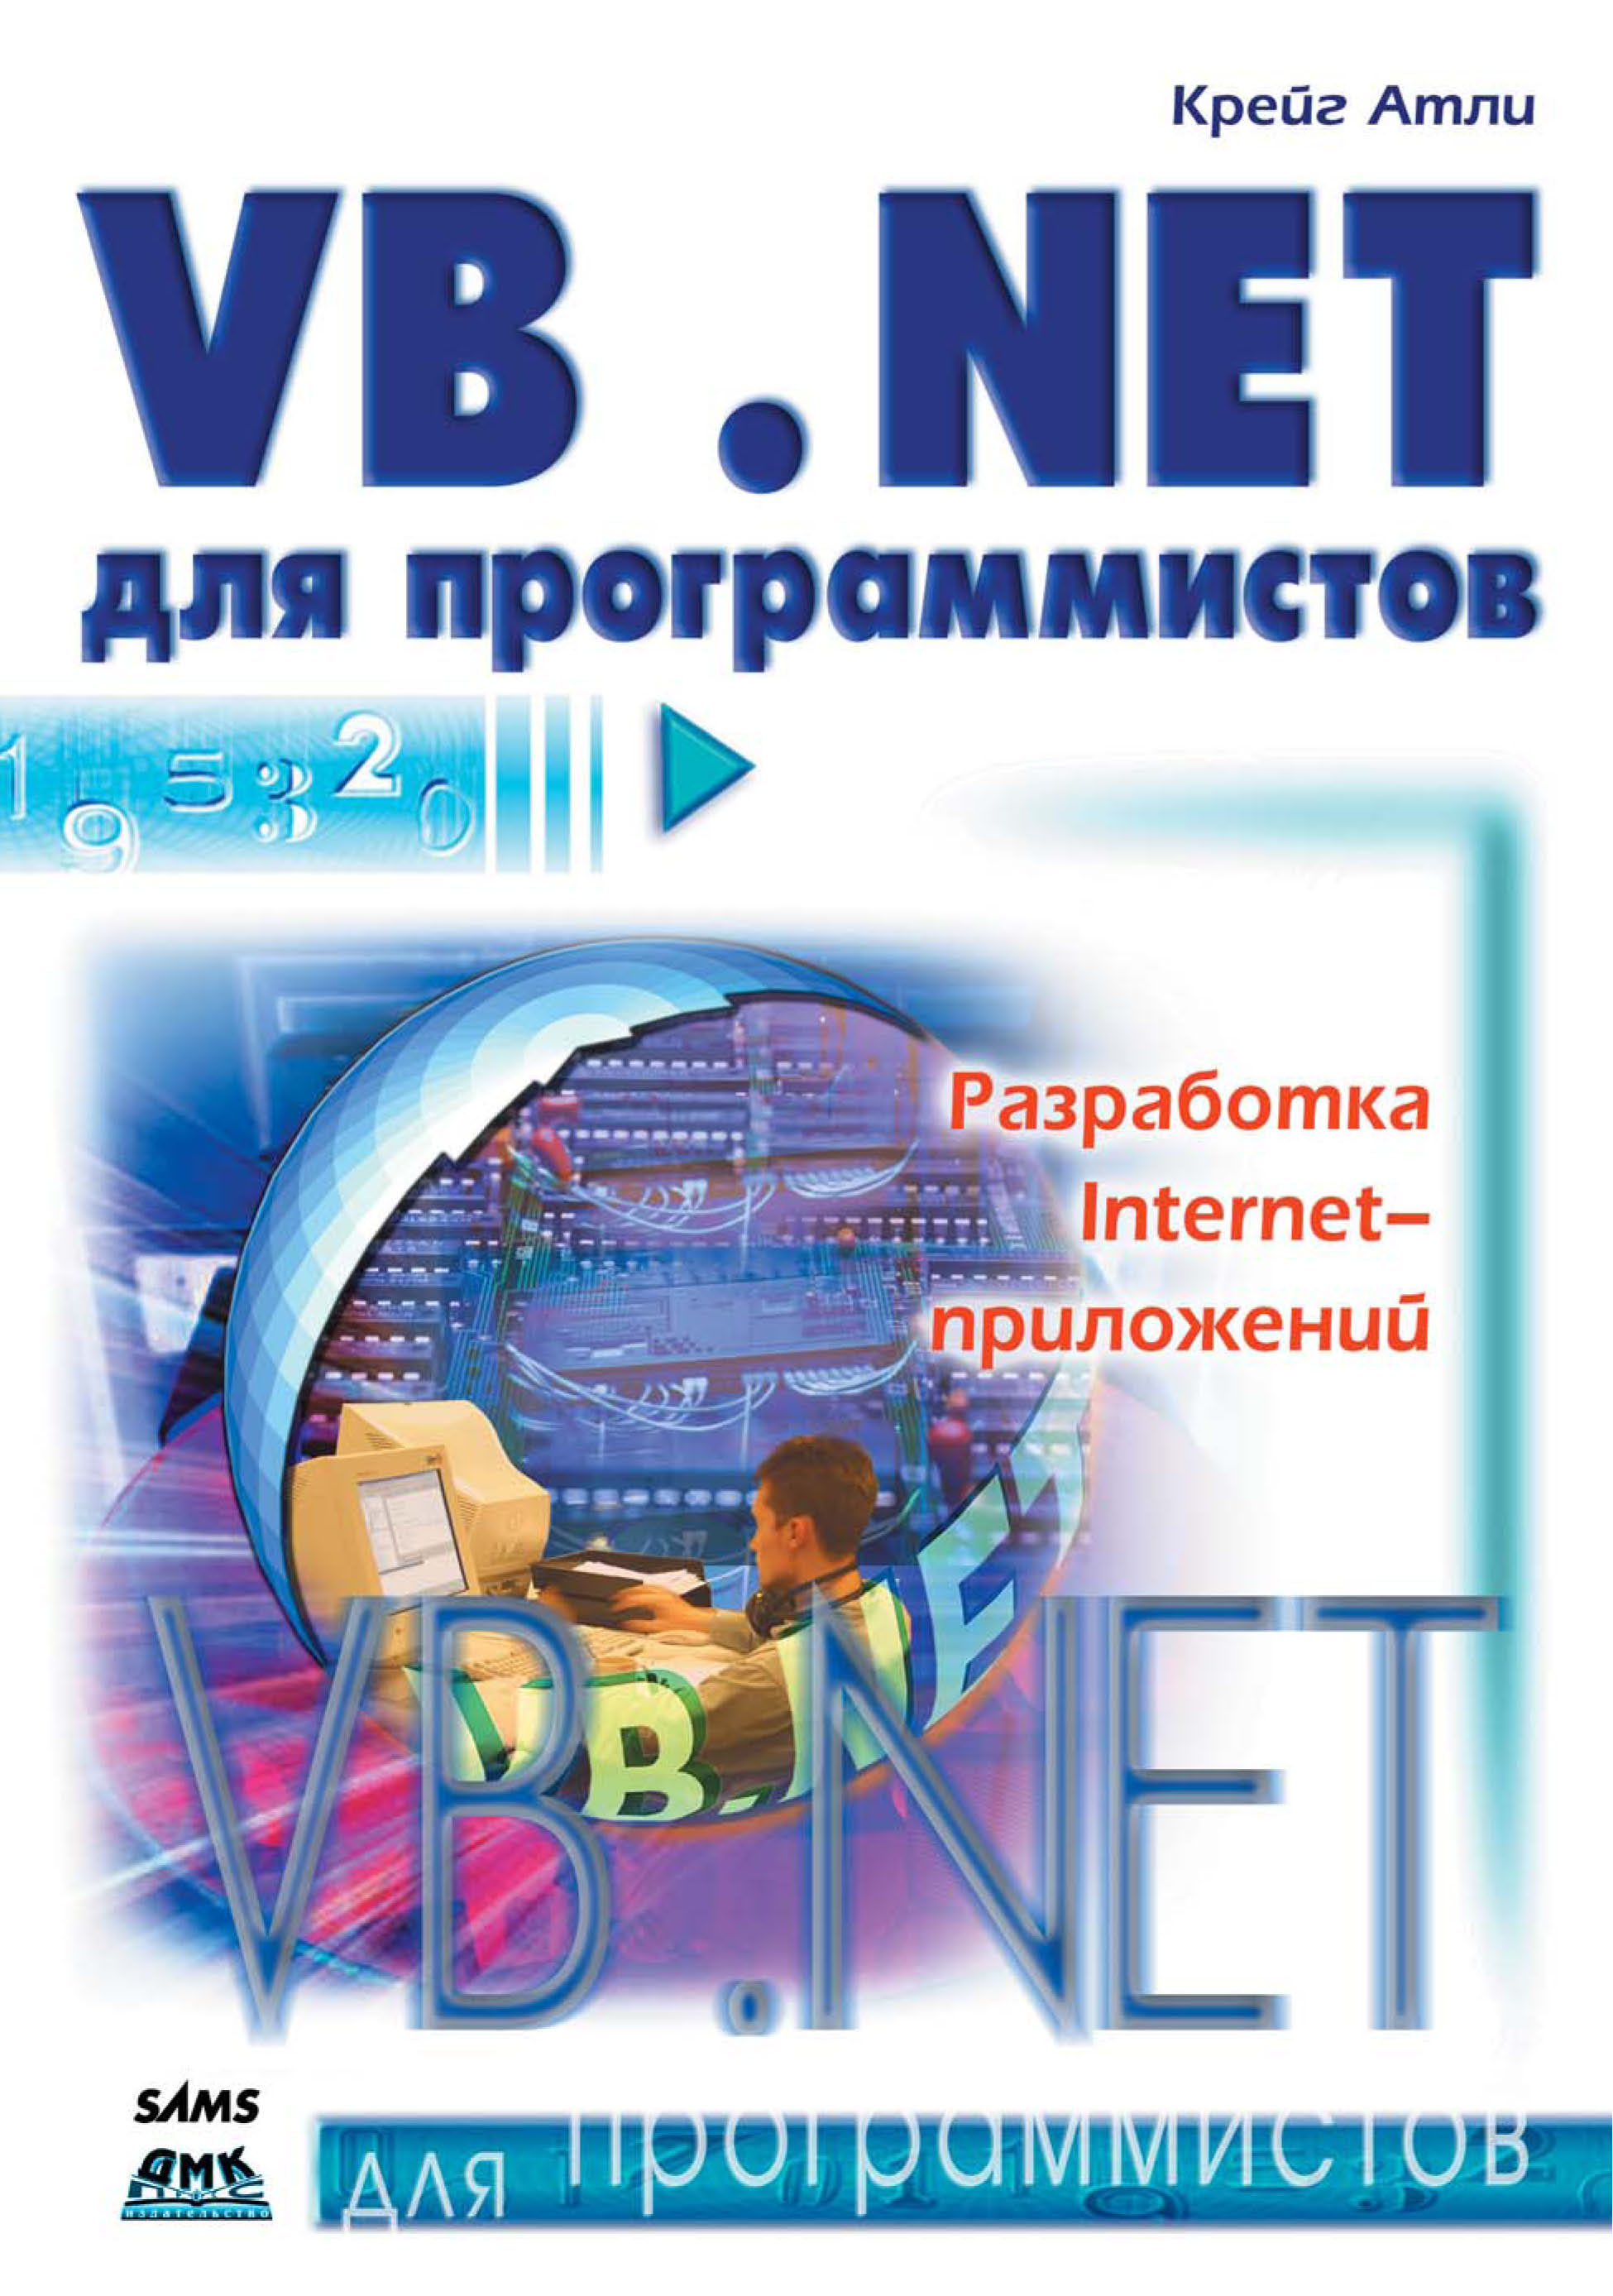 Книга Для программистов (ДМК Пресс) Visual Basic .NET для программистов созданная Крейг Атли, А. А. Слинкин может относится к жанру зарубежная компьютерная литература, программирование. Стоимость электронной книги Visual Basic .NET для программистов с идентификатором 22806464 составляет 199.00 руб.